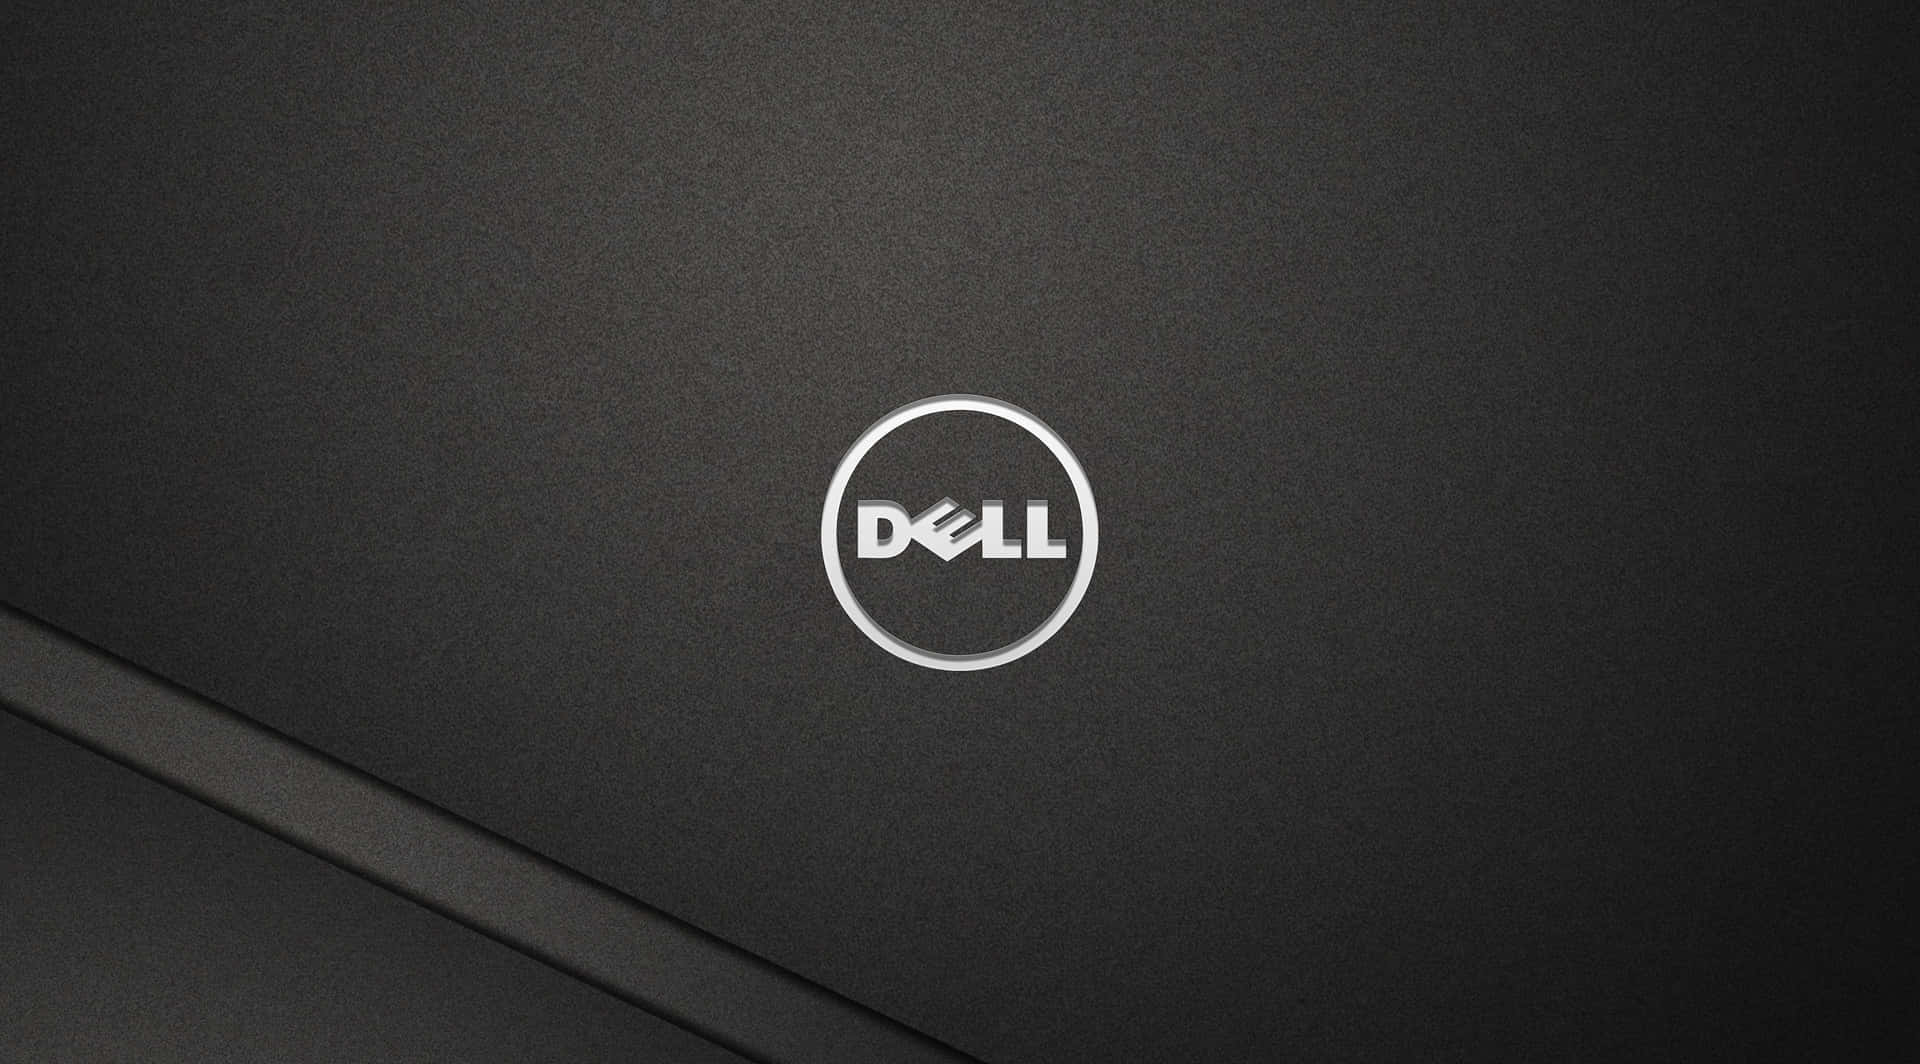 Dell,lavorando Verso L'eccellenza Tecnologica